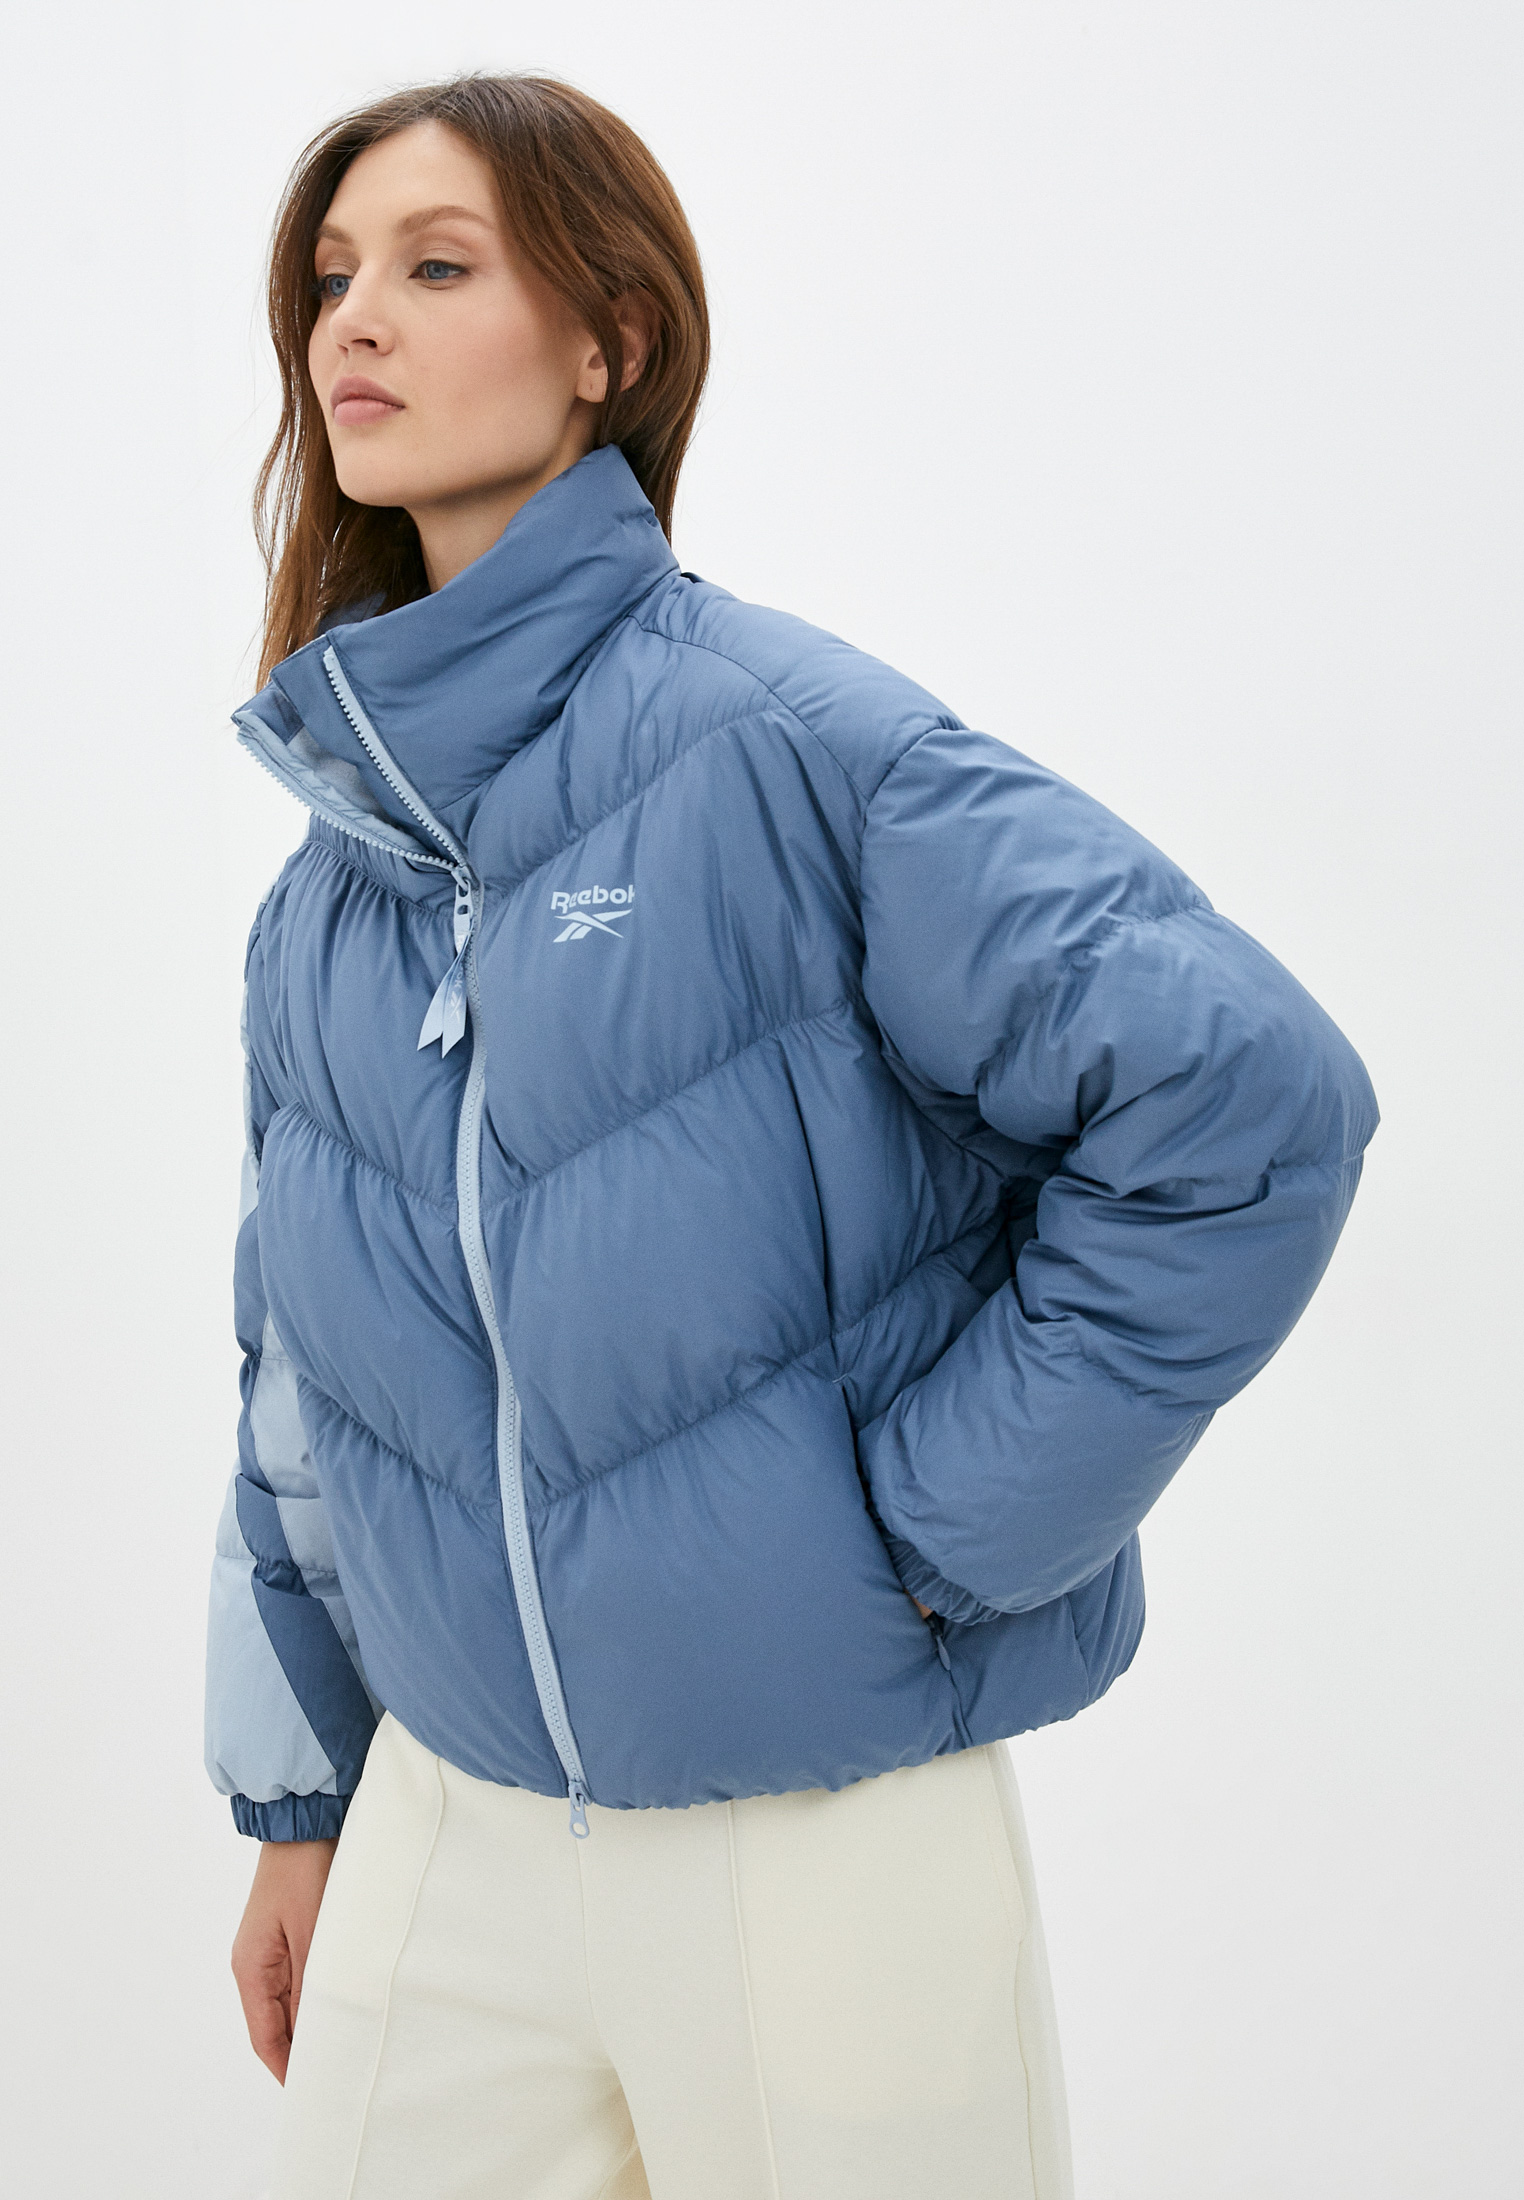 Утепленная куртка женская Reebok Classic H45339 купить за 13590 руб.